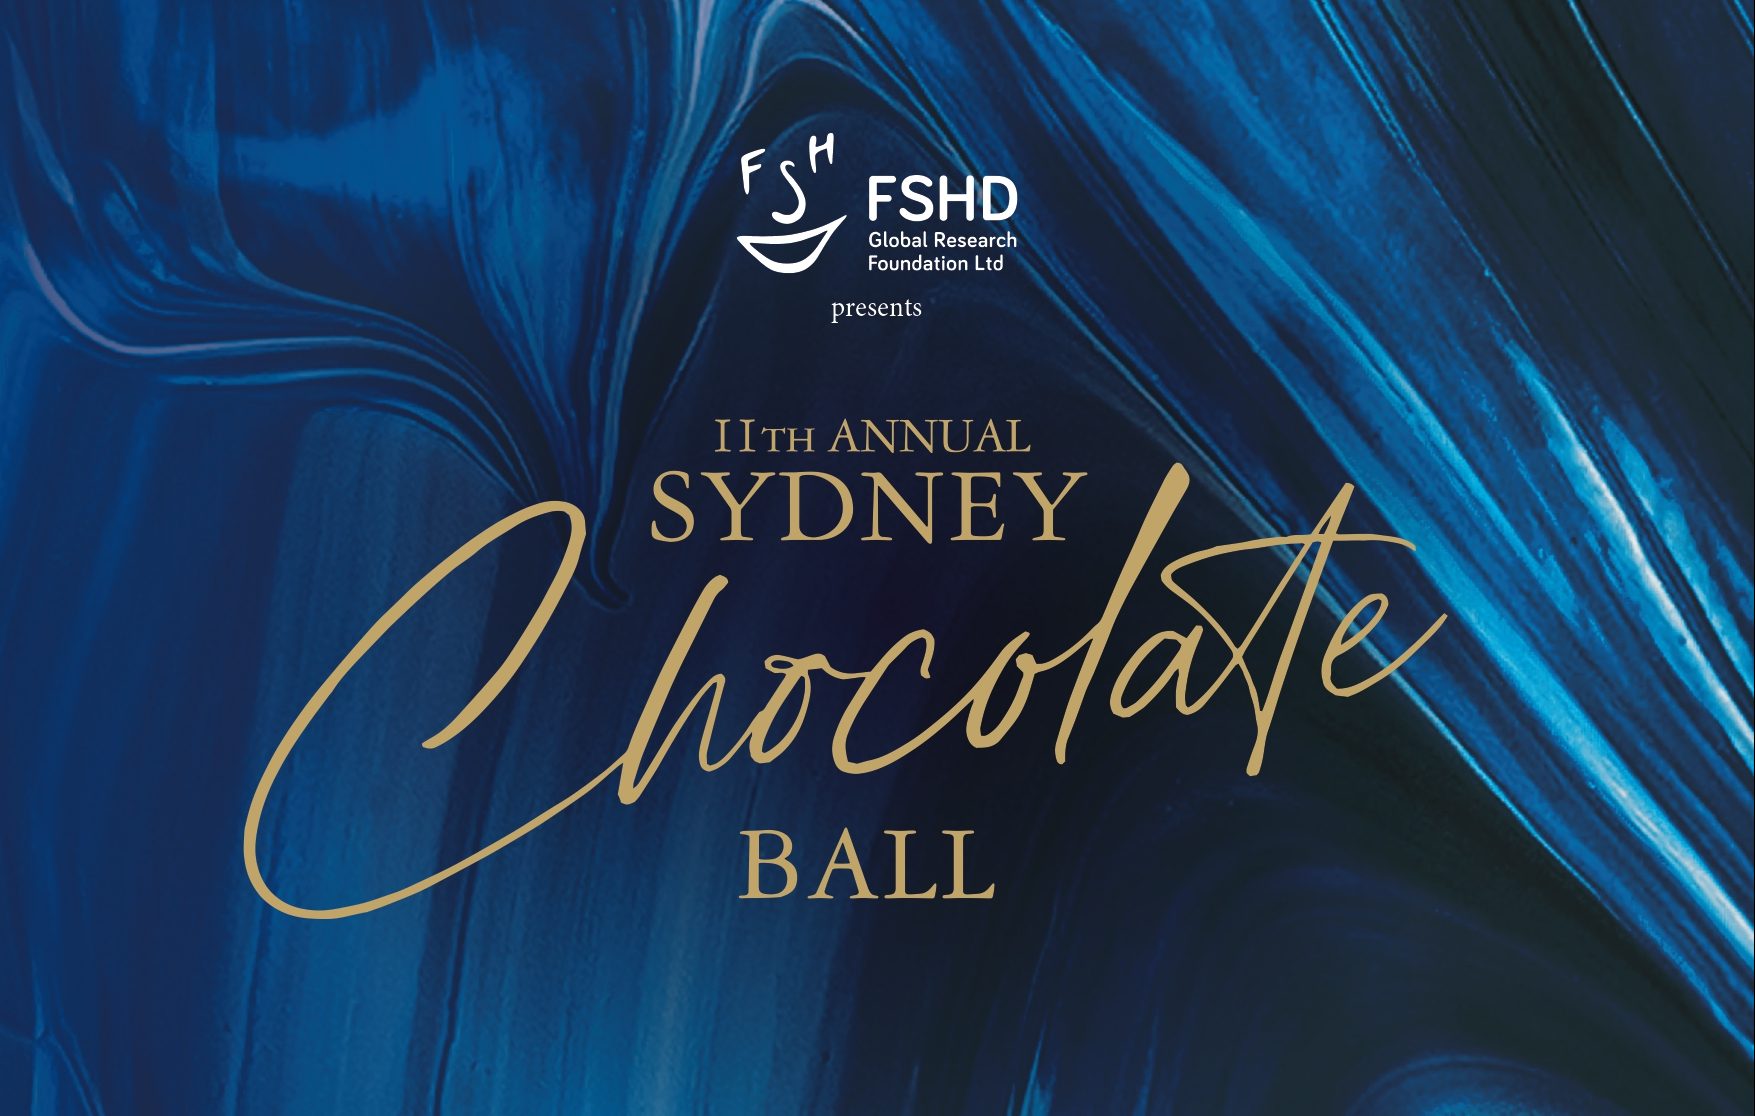 FSHD 11th Sydney Annual Chocolate Ball - Human Statue Bodyart